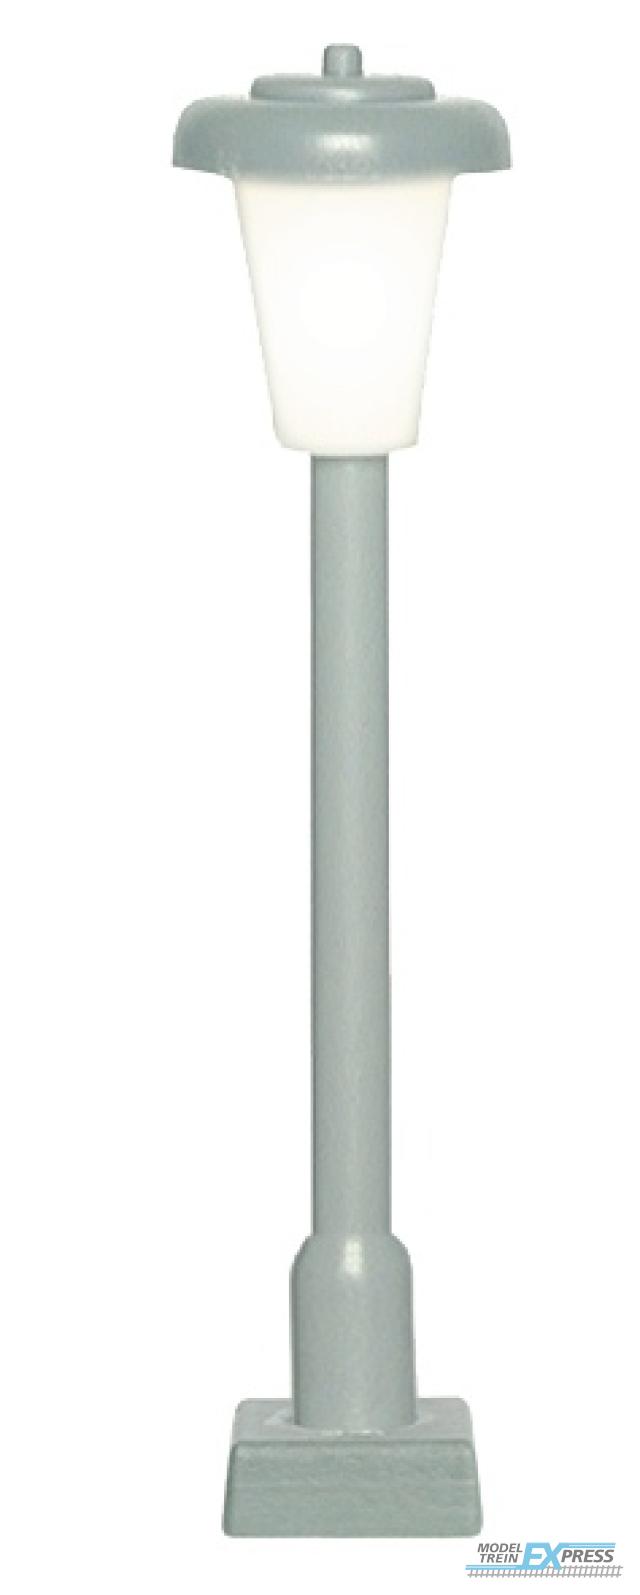 Viessmann 60801 H0 Straßenleuchte modern mit Kontaktstecksockel,LED weiß